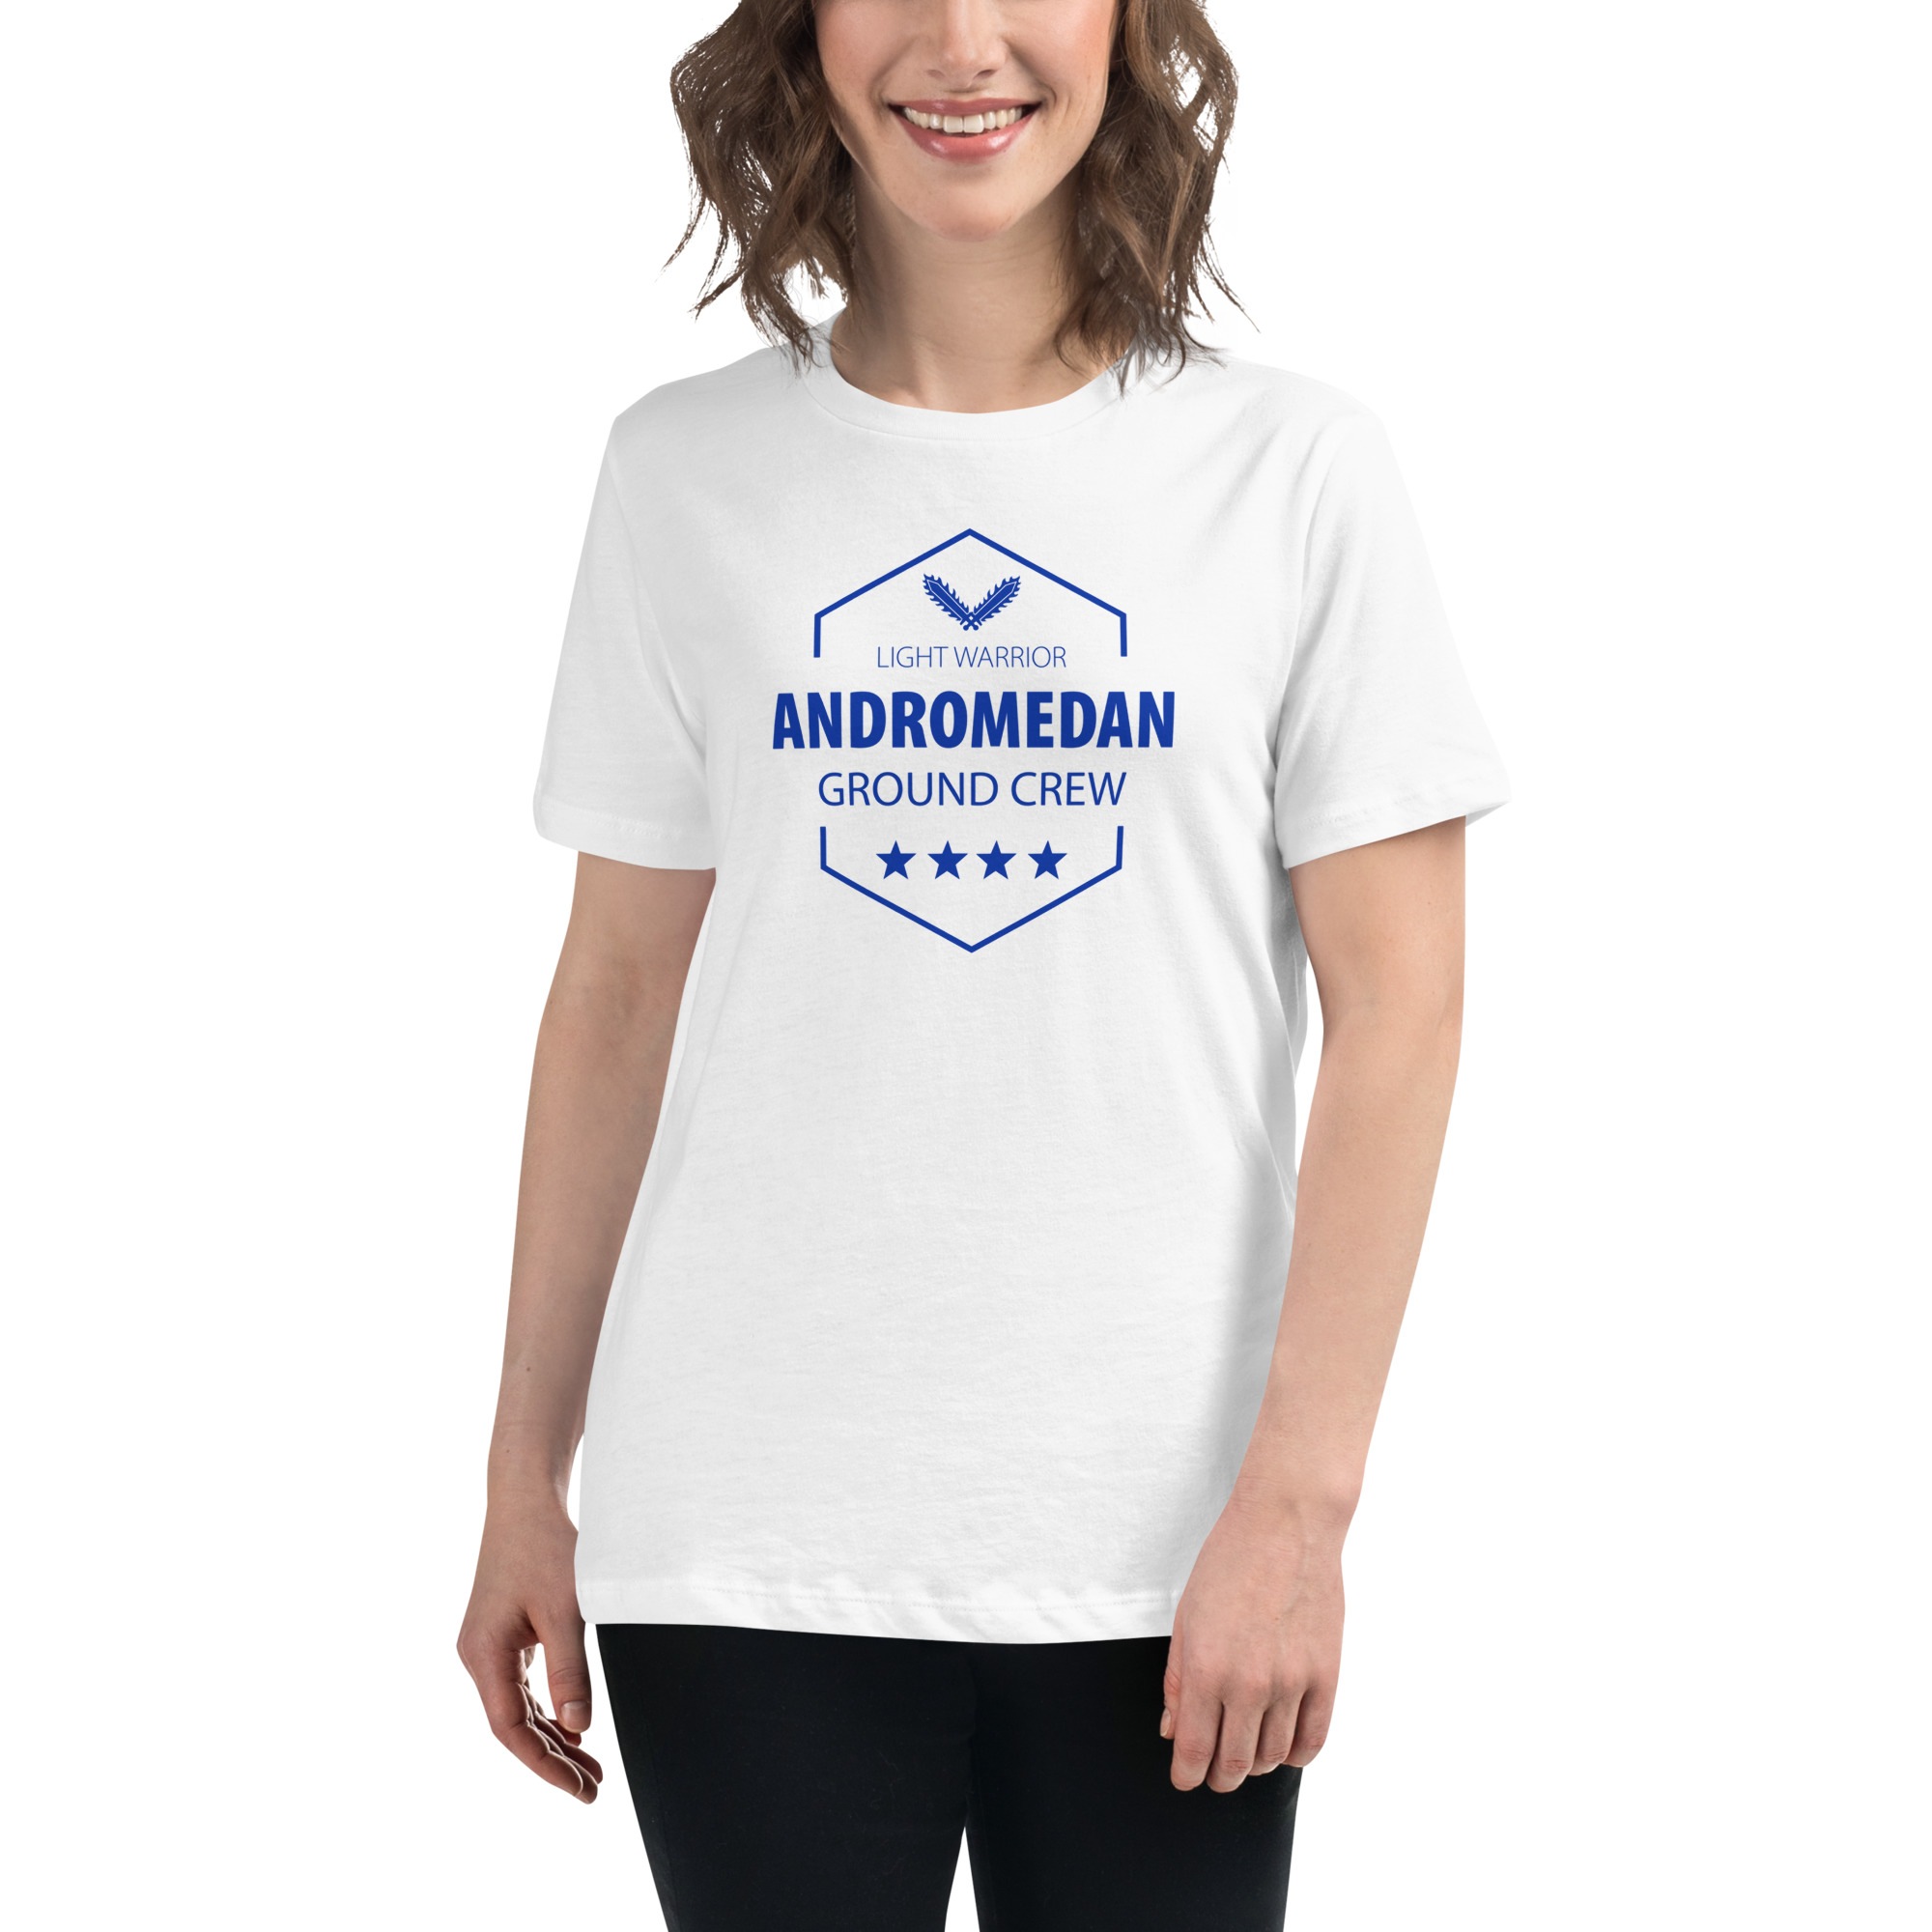 Andromedan Ground Crew Tshirt